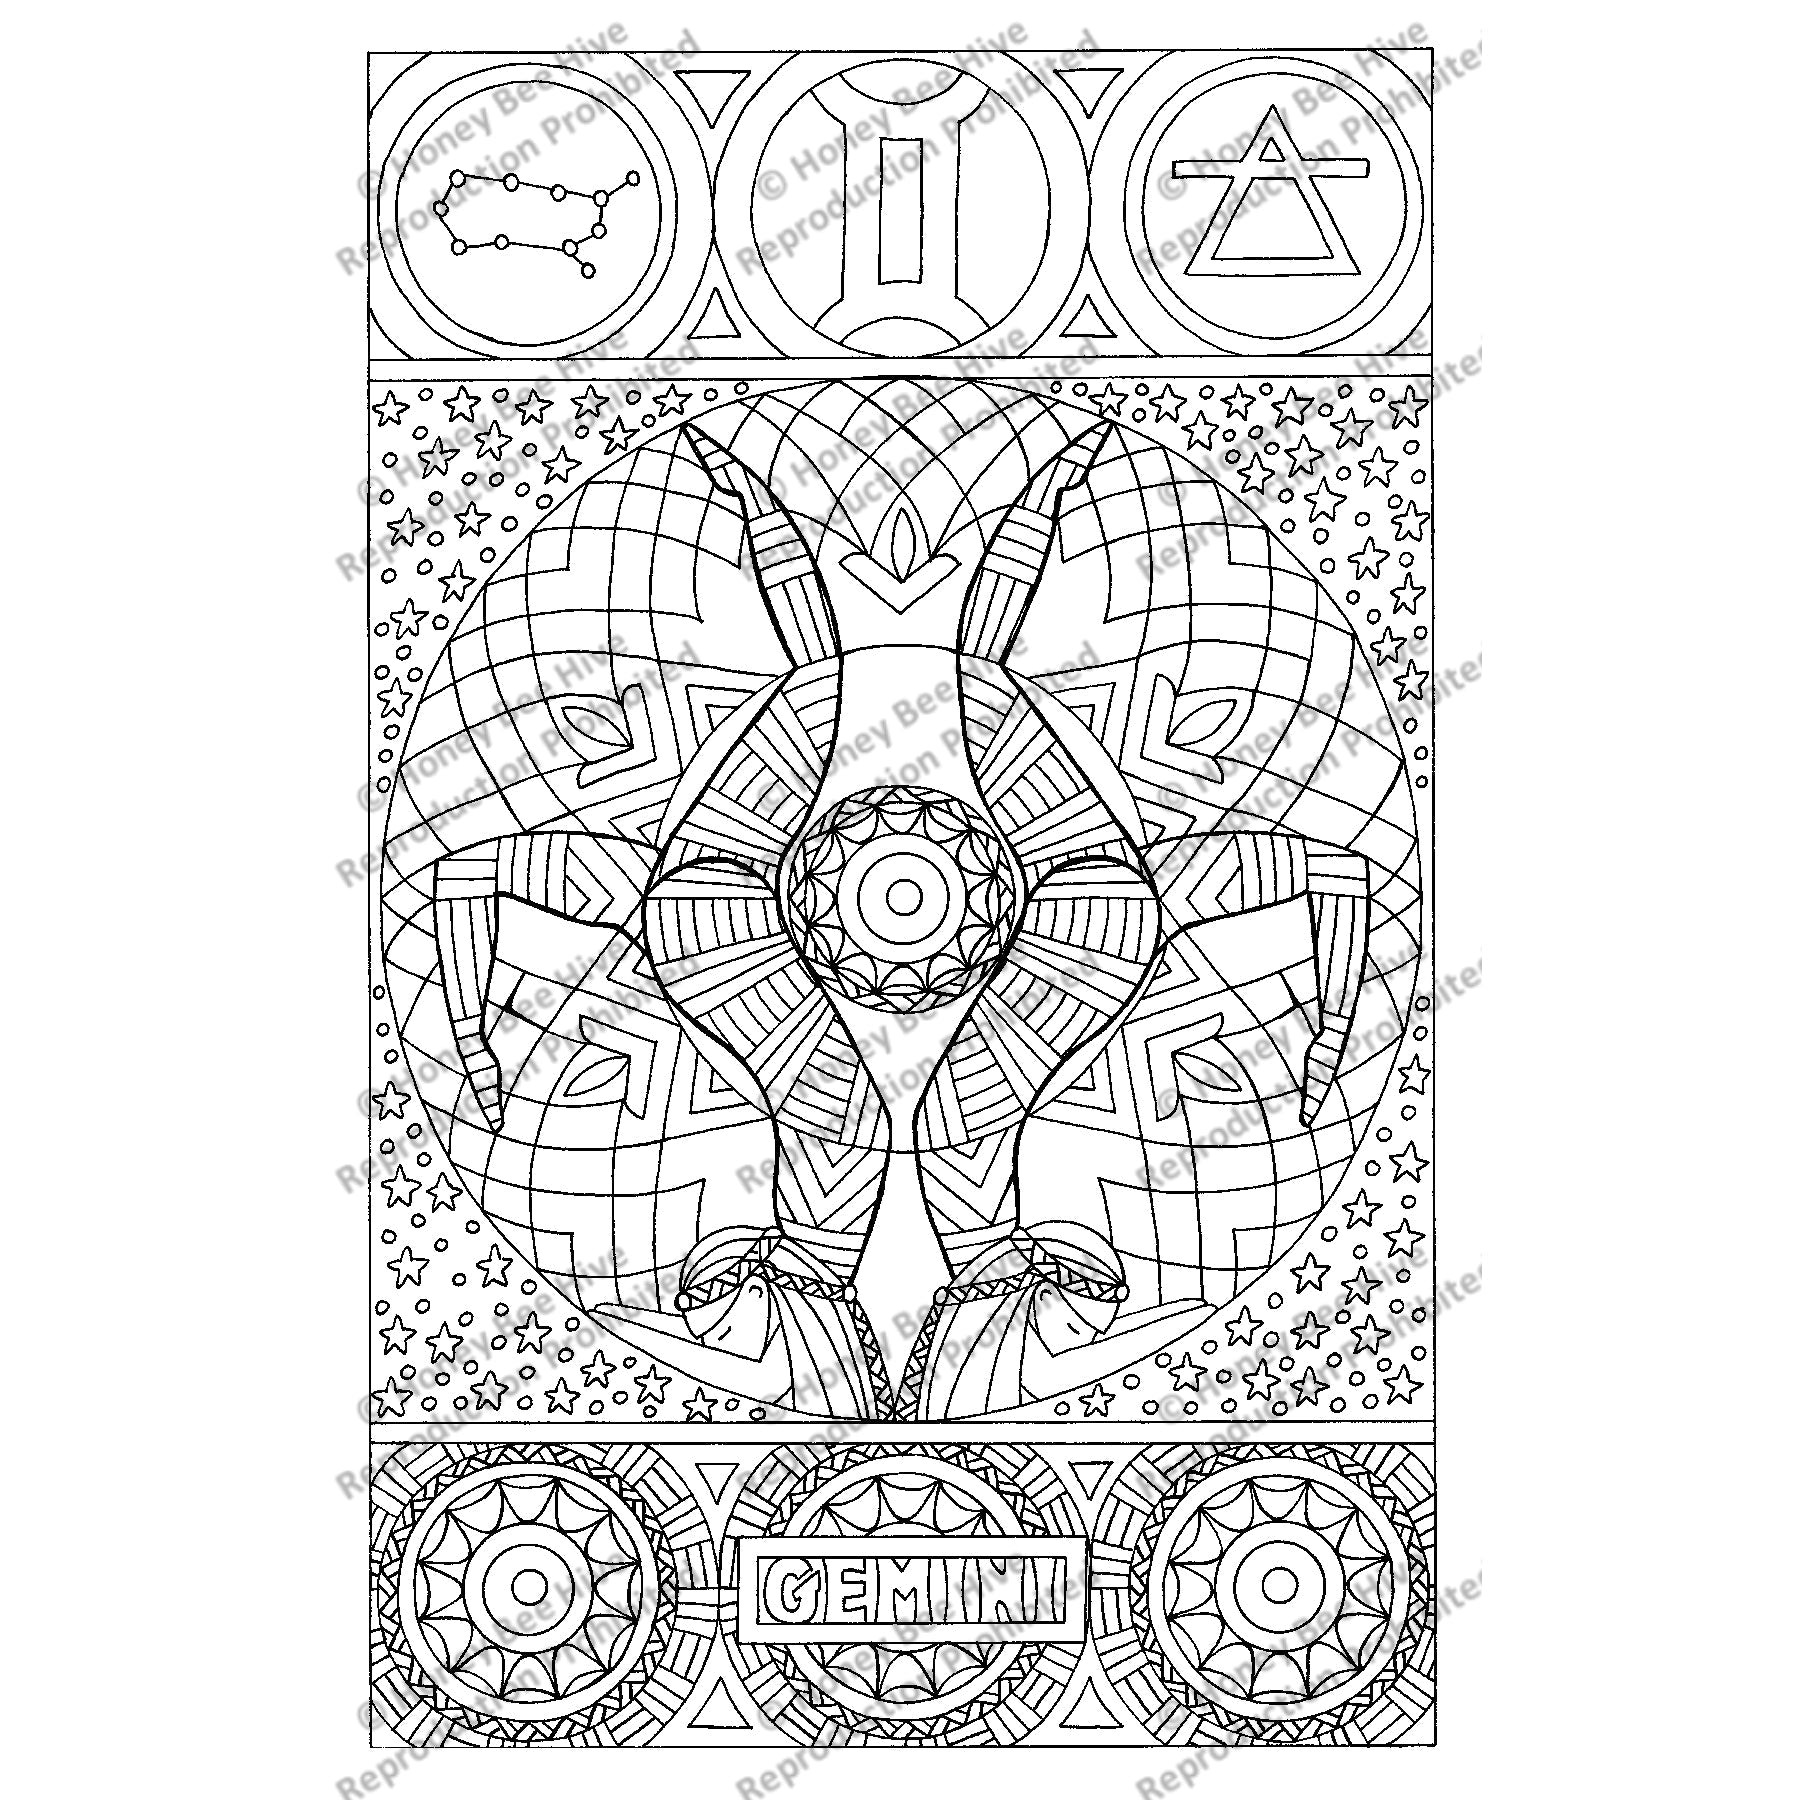 Gemini, rug hooking pattern